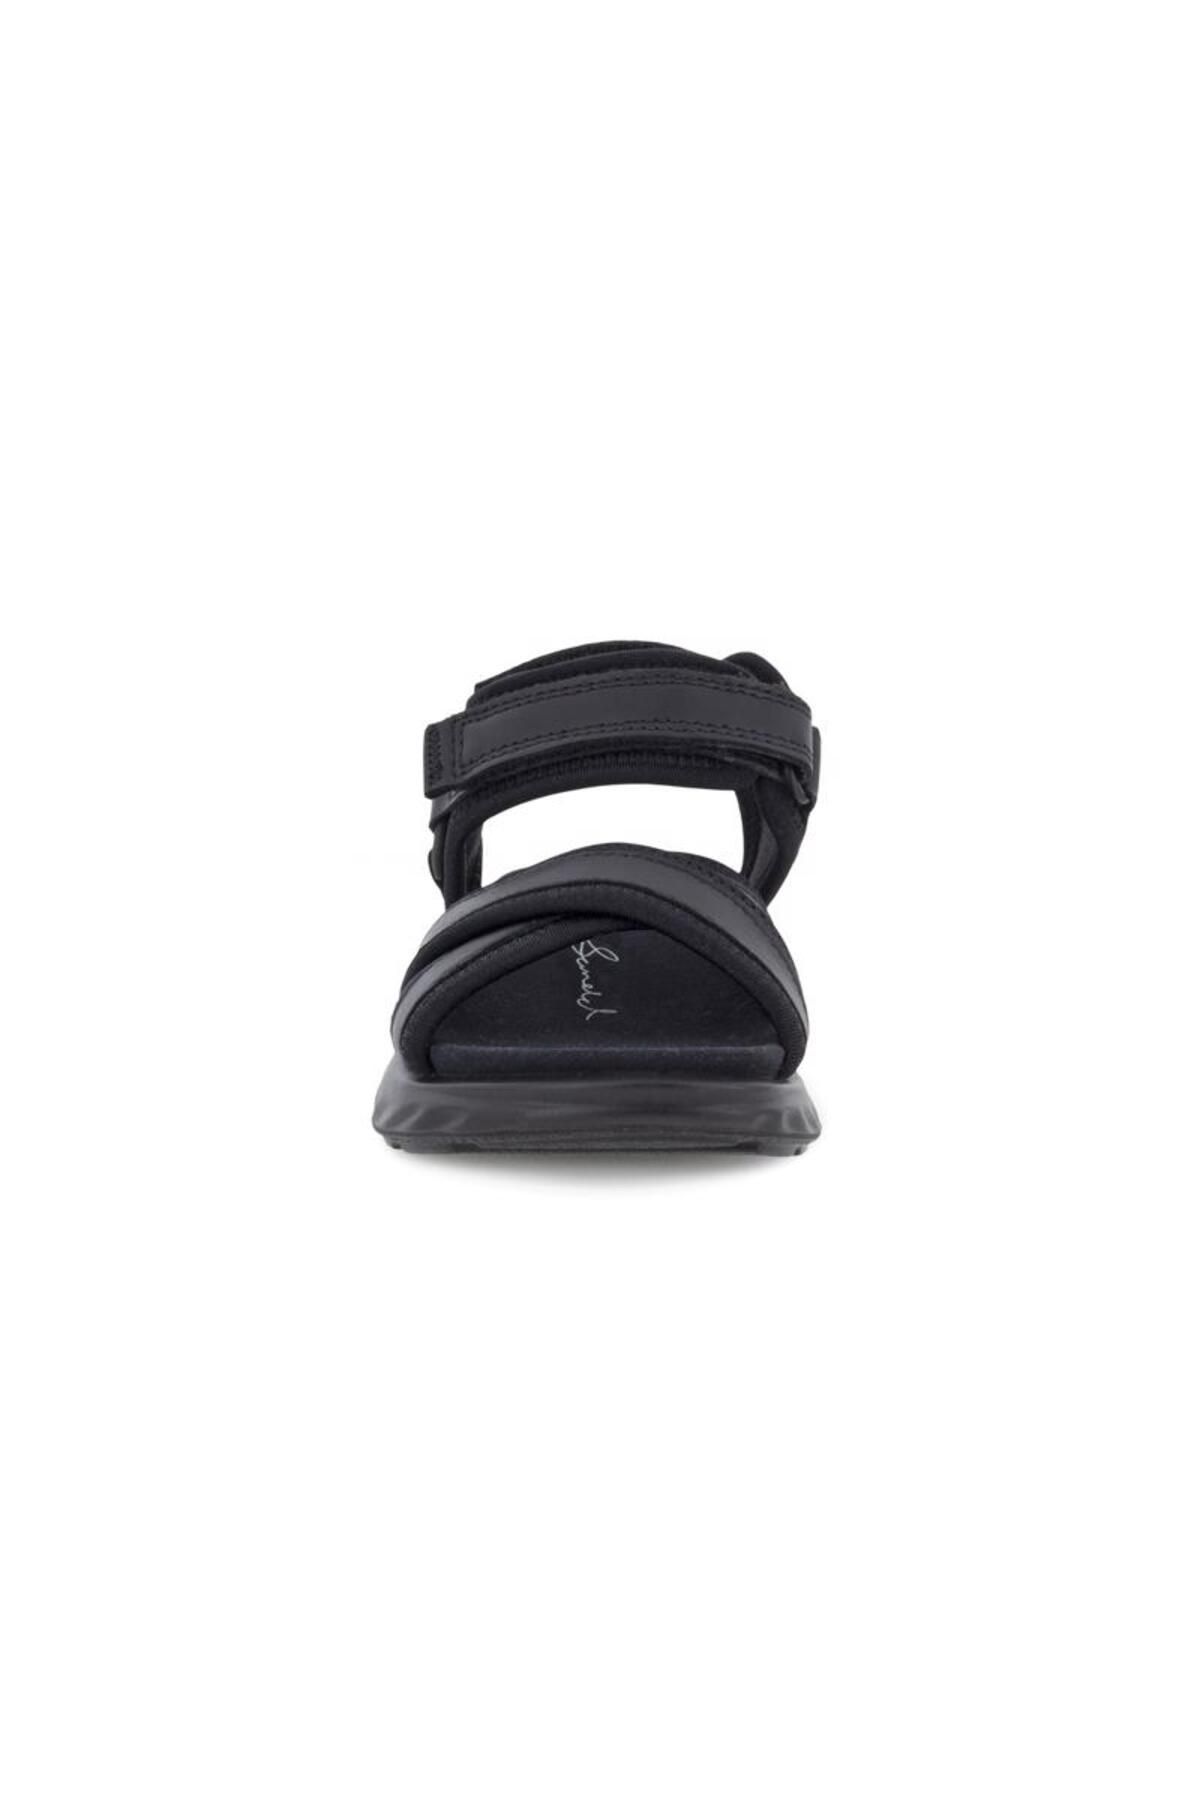 Ecco SP.1 Lide Sandal K Flat S